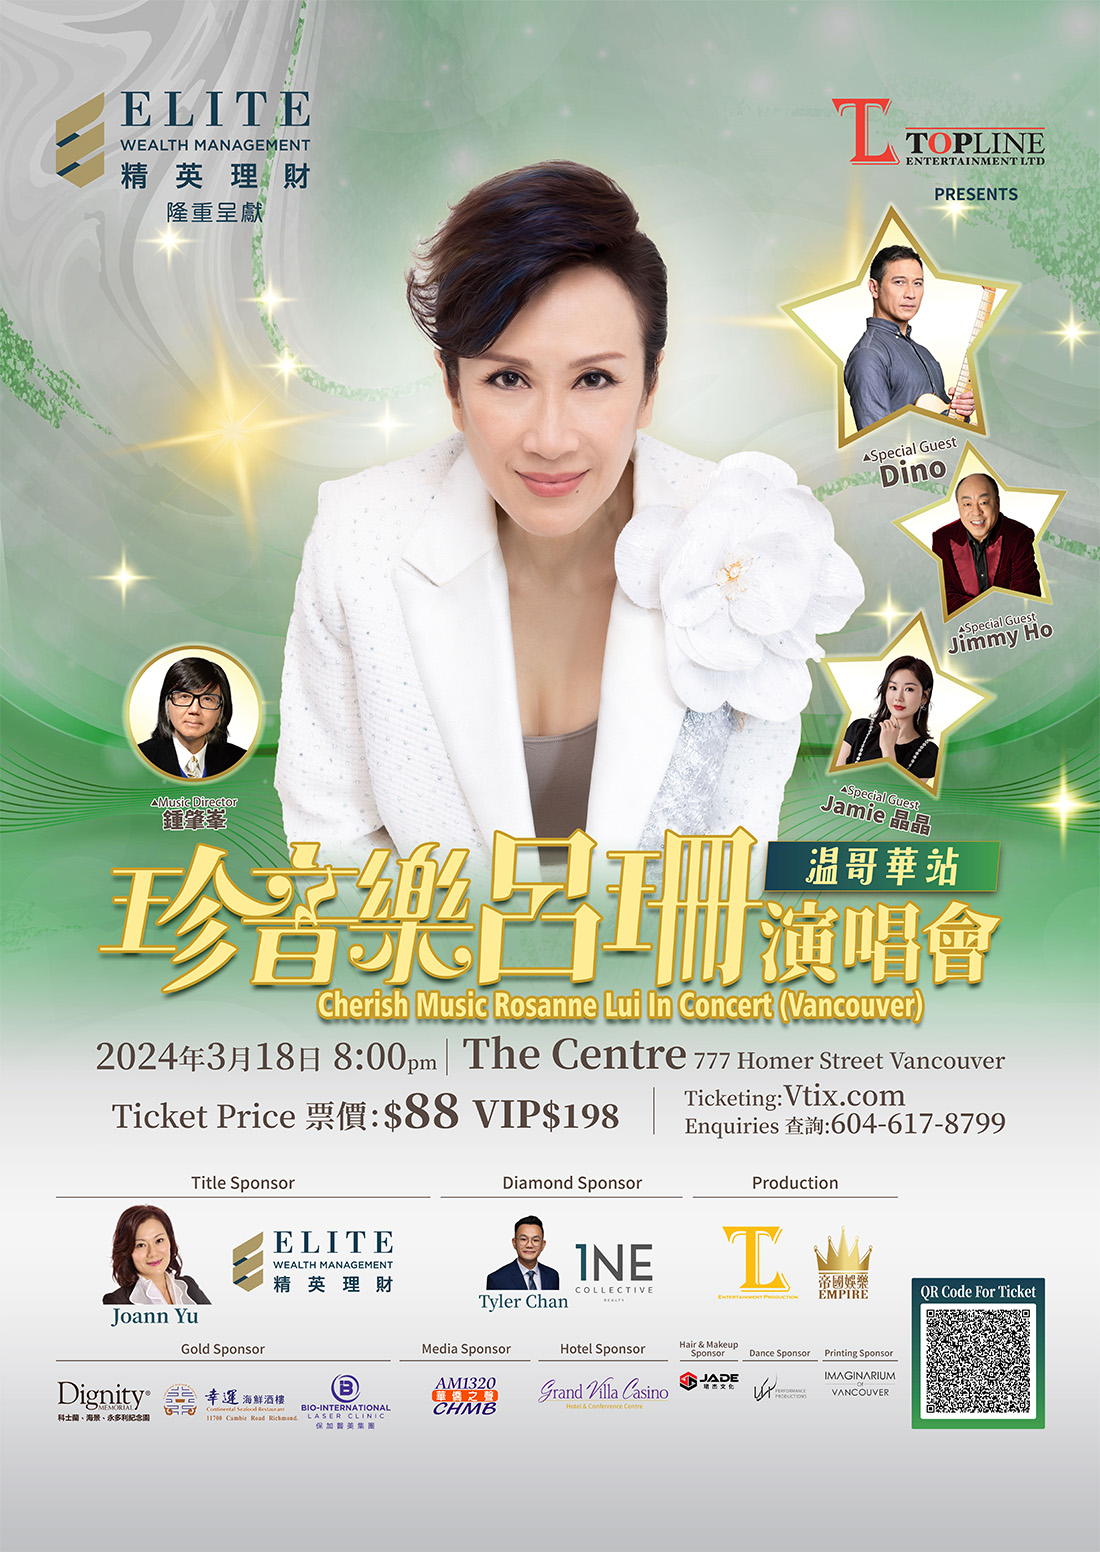 Rosanne Lui in concert 2024 (Vancouver) 珍音樂呂珊演唱會2024 (溫哥華)